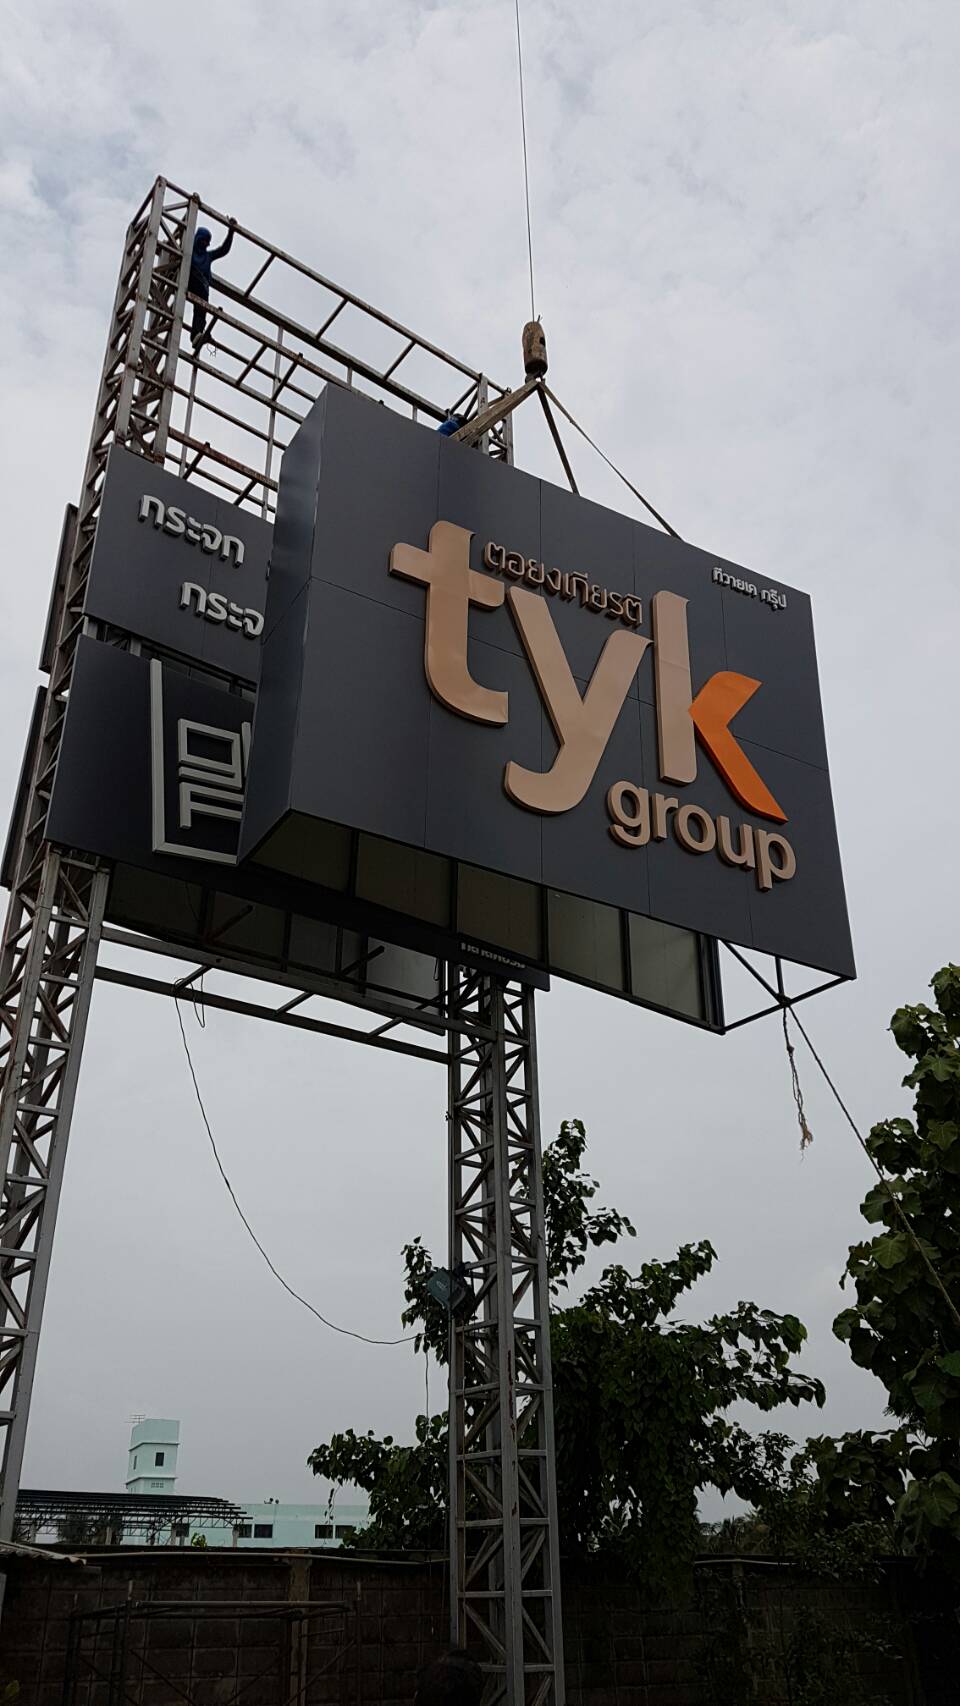 ทาวเวอร์หน้าบริษัท TYK Group ตอยงเกียรติ